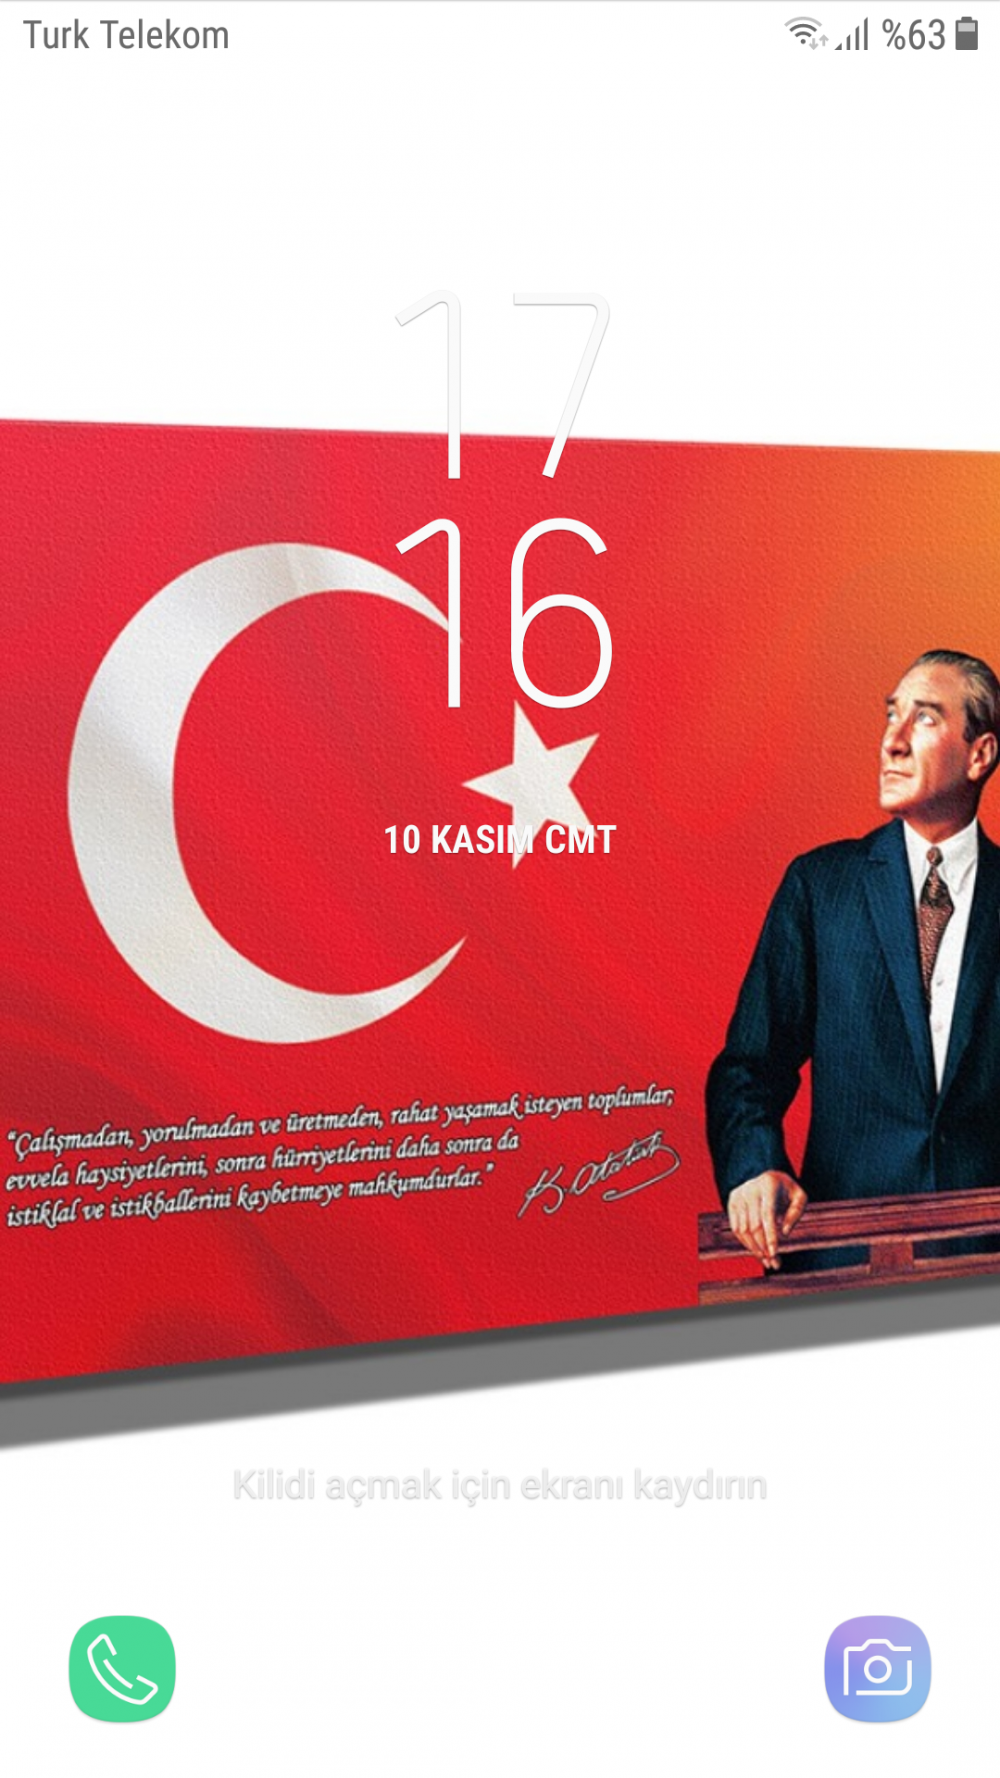 Başkomutan Mustafa Kemal Atatürk. Ne demiş biliyor musunuz? Resimde yazıyor.